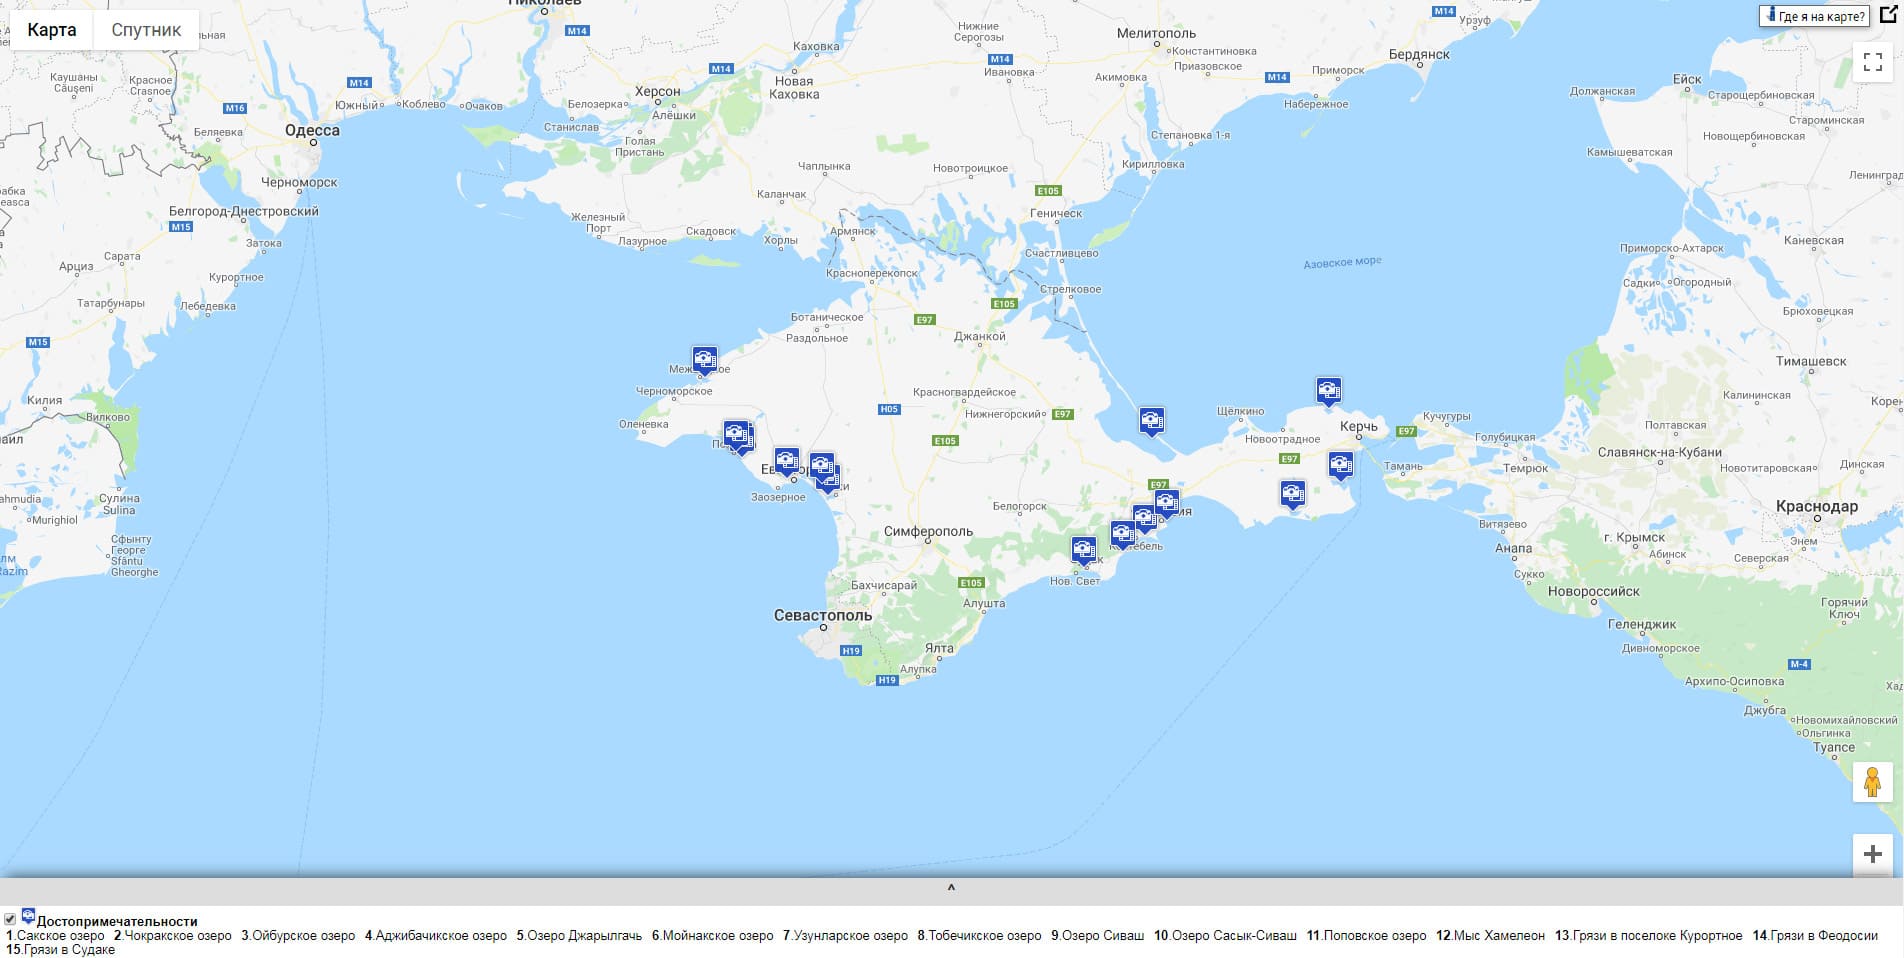 Карта лечебных грязей Крыма